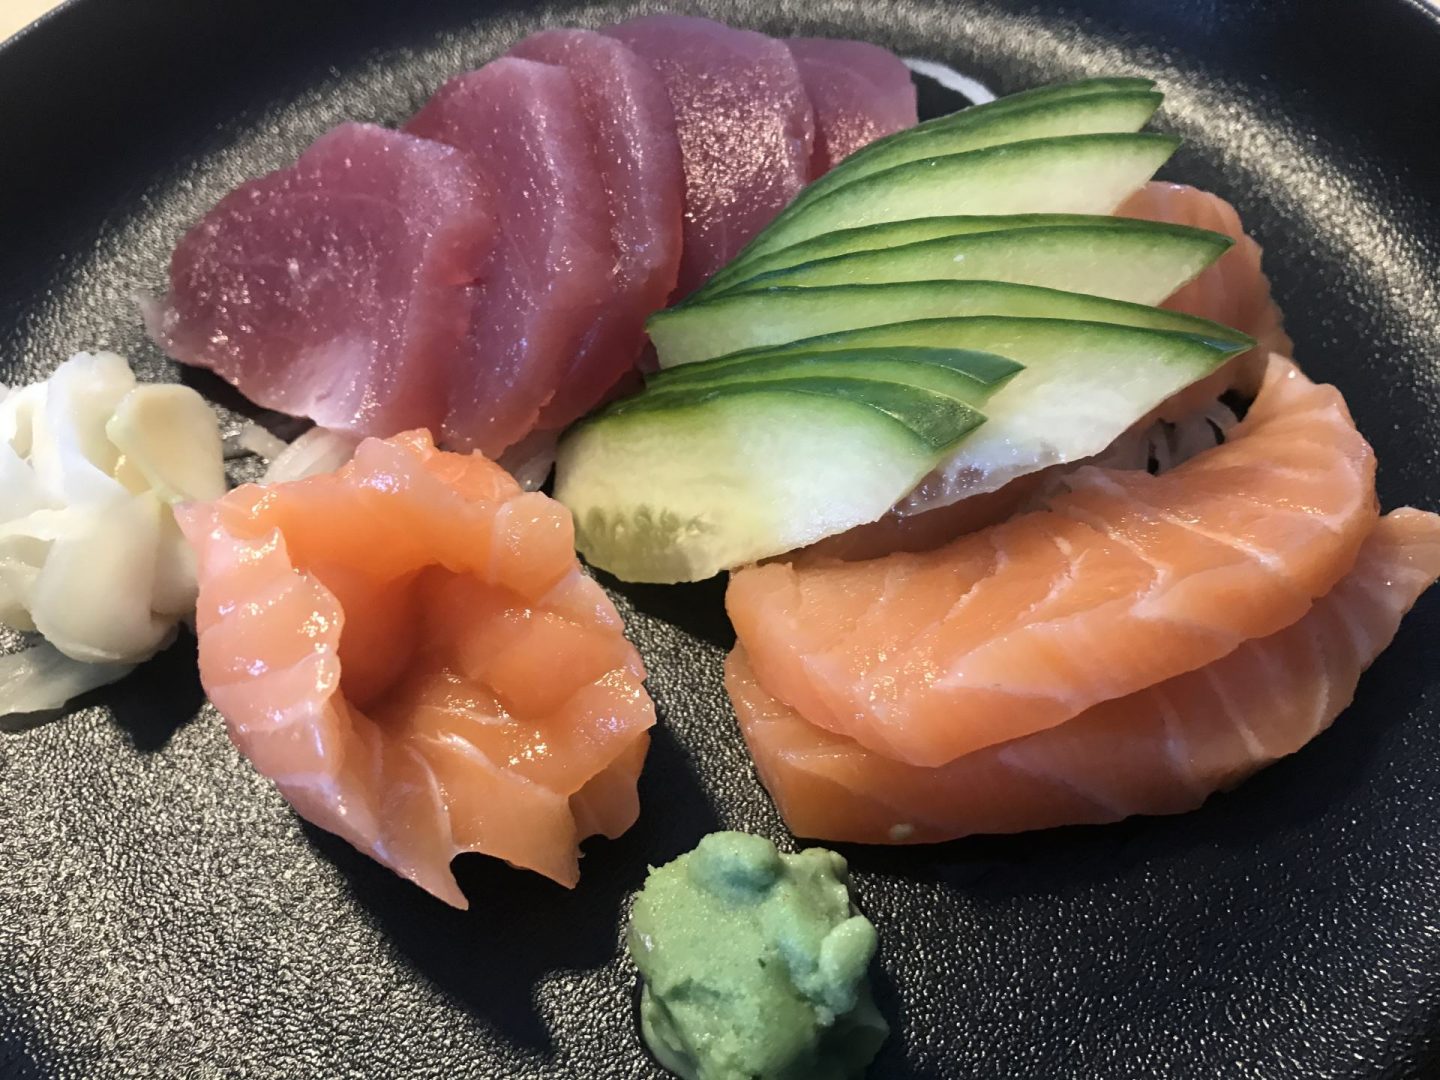 Erfahrung Bewertung Kritik Aosora Sushi Bochum Sashimi Lachs und Thunfisch Foodblog Sternestulle